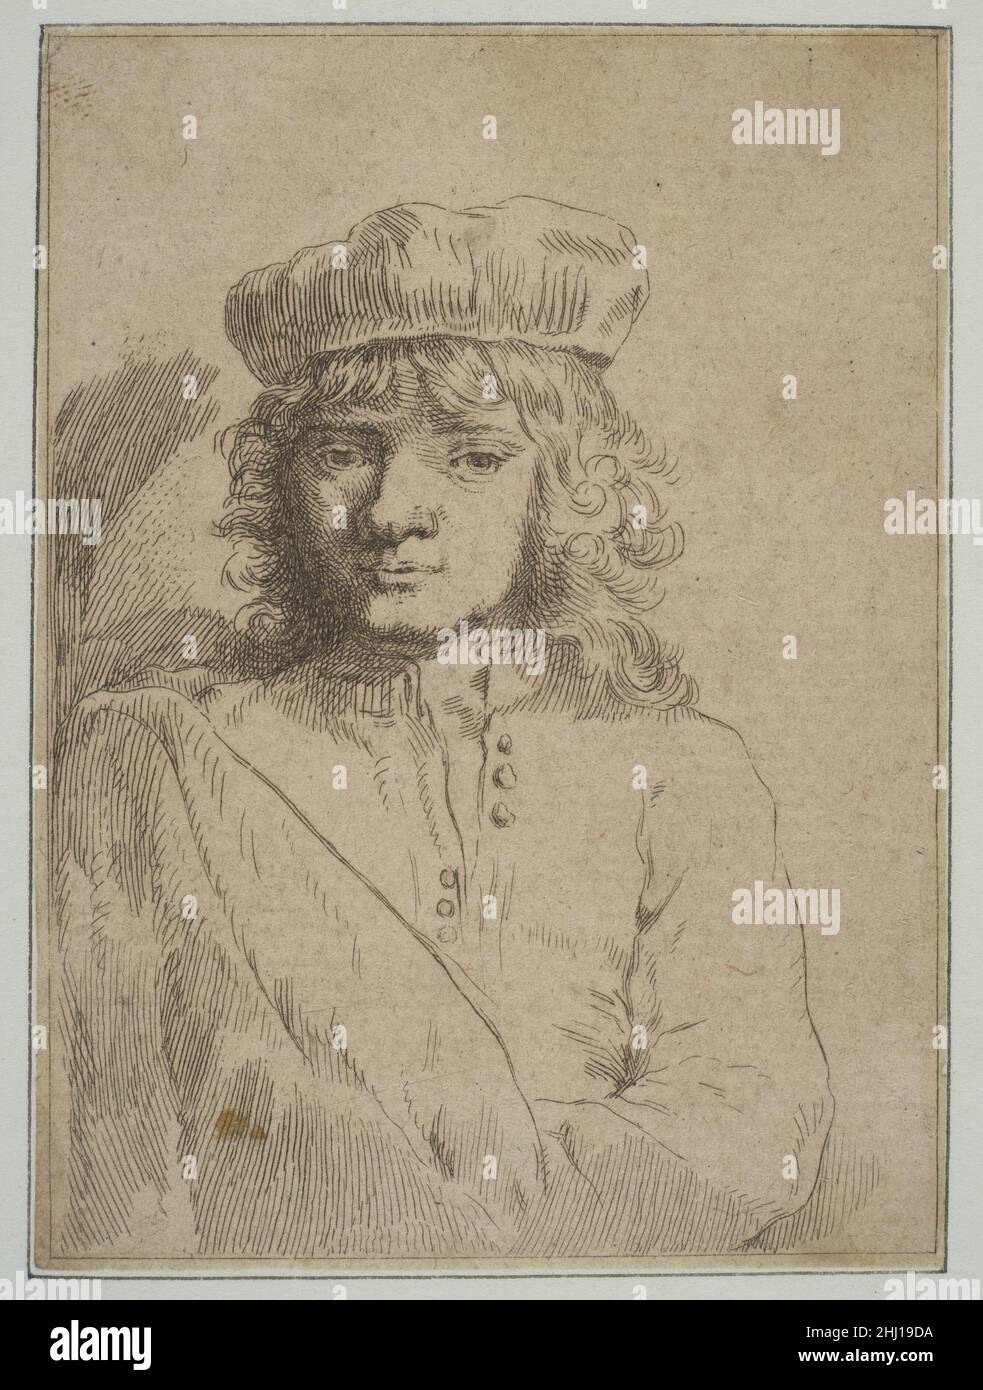 El hijo del artista, Tito (copia) ca.1656 después de Rembrandt (Rembrandt van Rijn) holandés. El Hijo del Artista, Tito (copia) 391968 Foto de stock